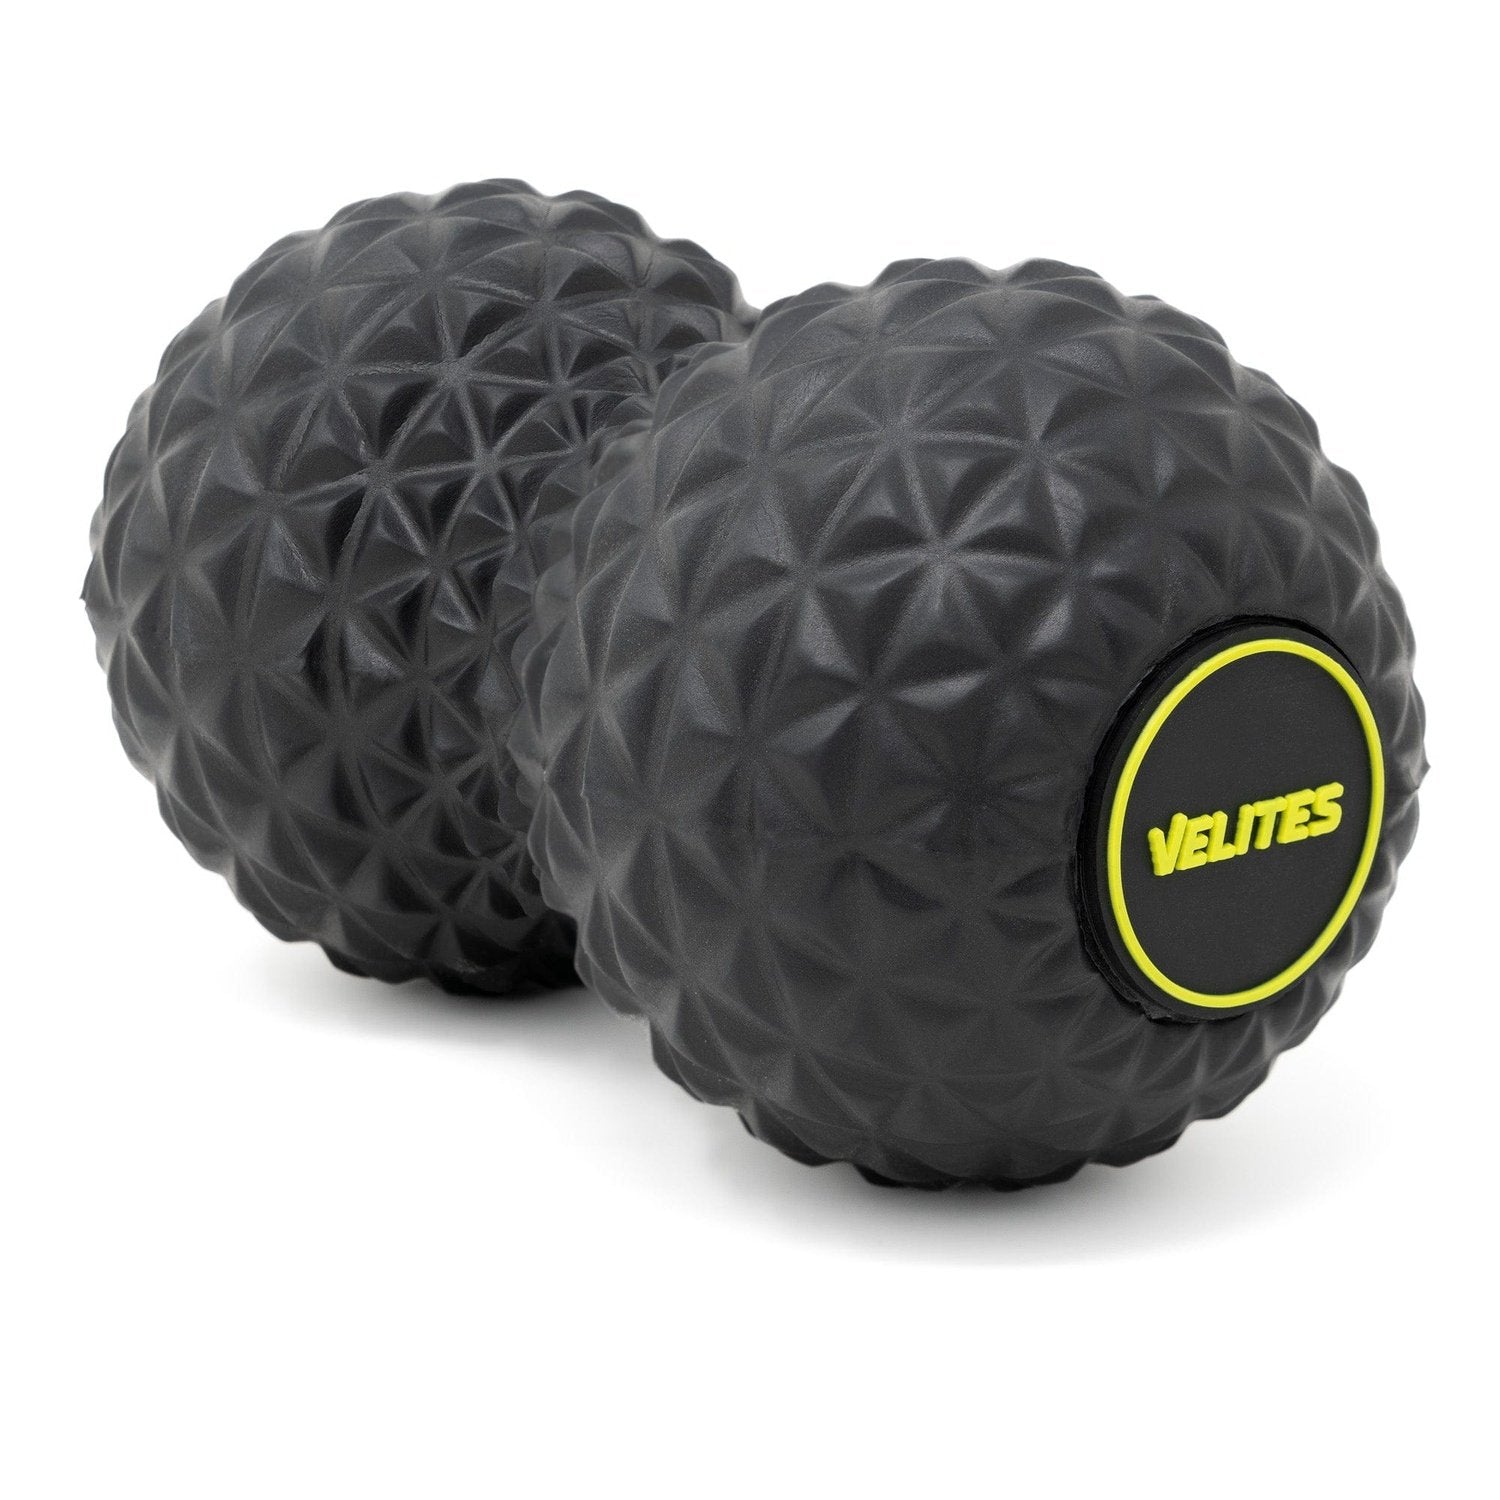 Velites Infinity Ball (Doppel-Massageball) kaufen bei HighPowered.ch